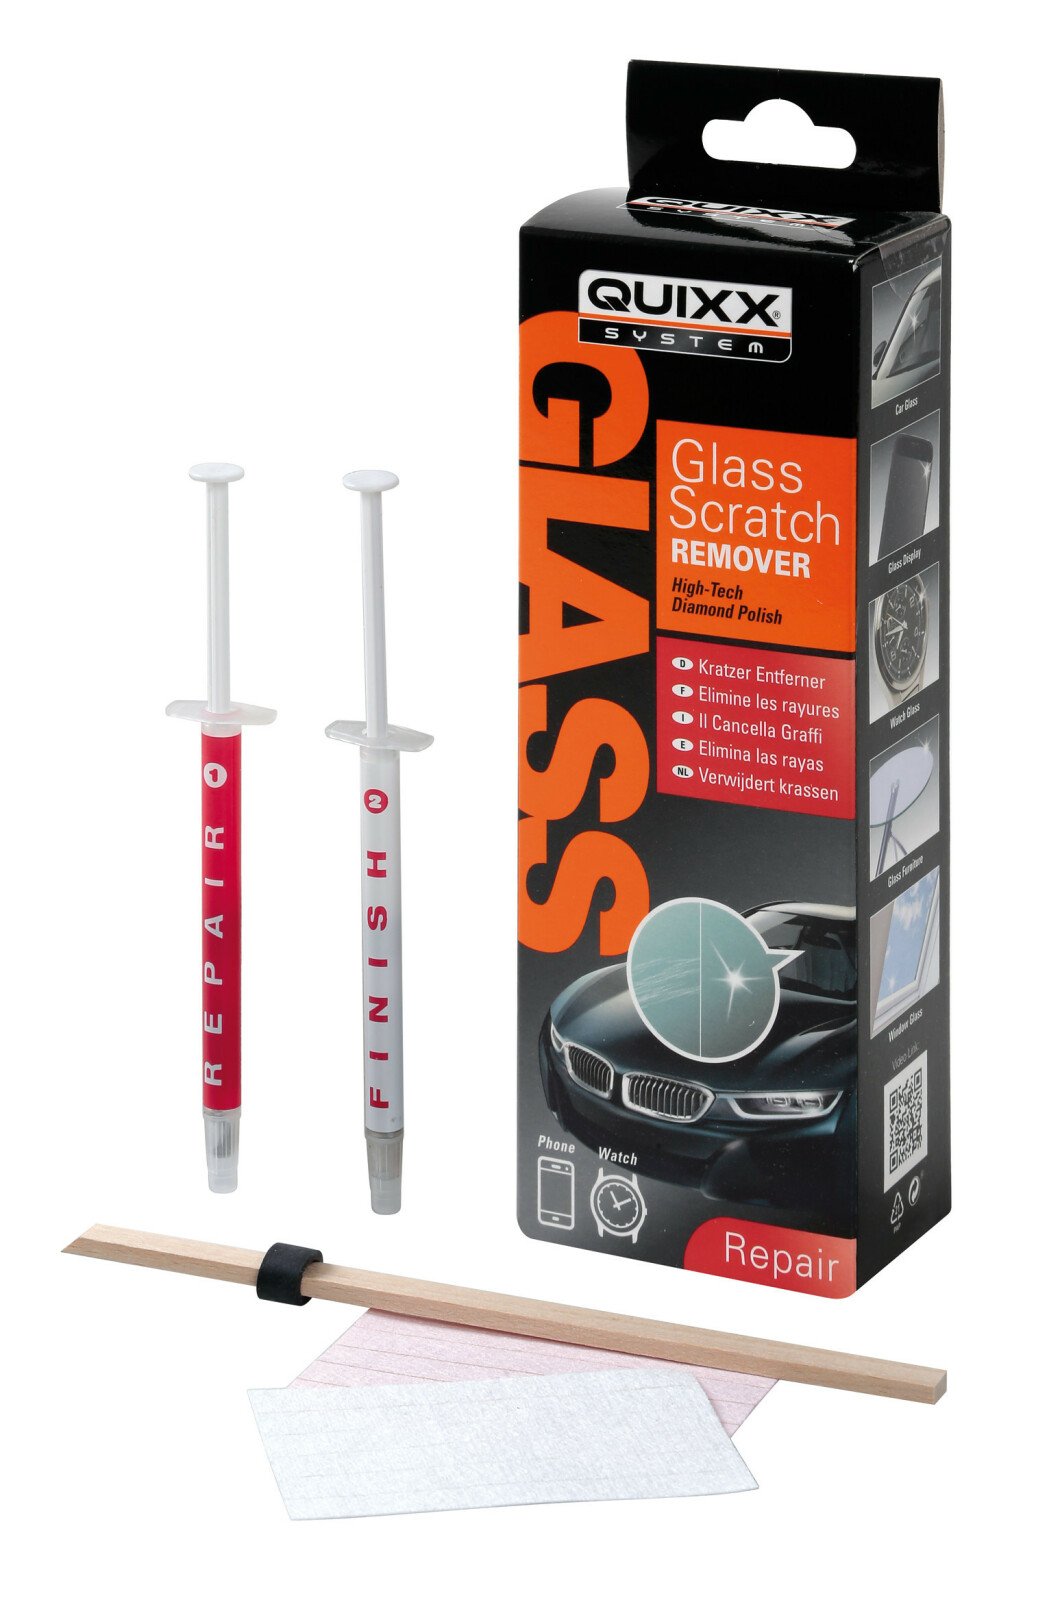 Quixx, üvegkarc eltávolító készlet thumb